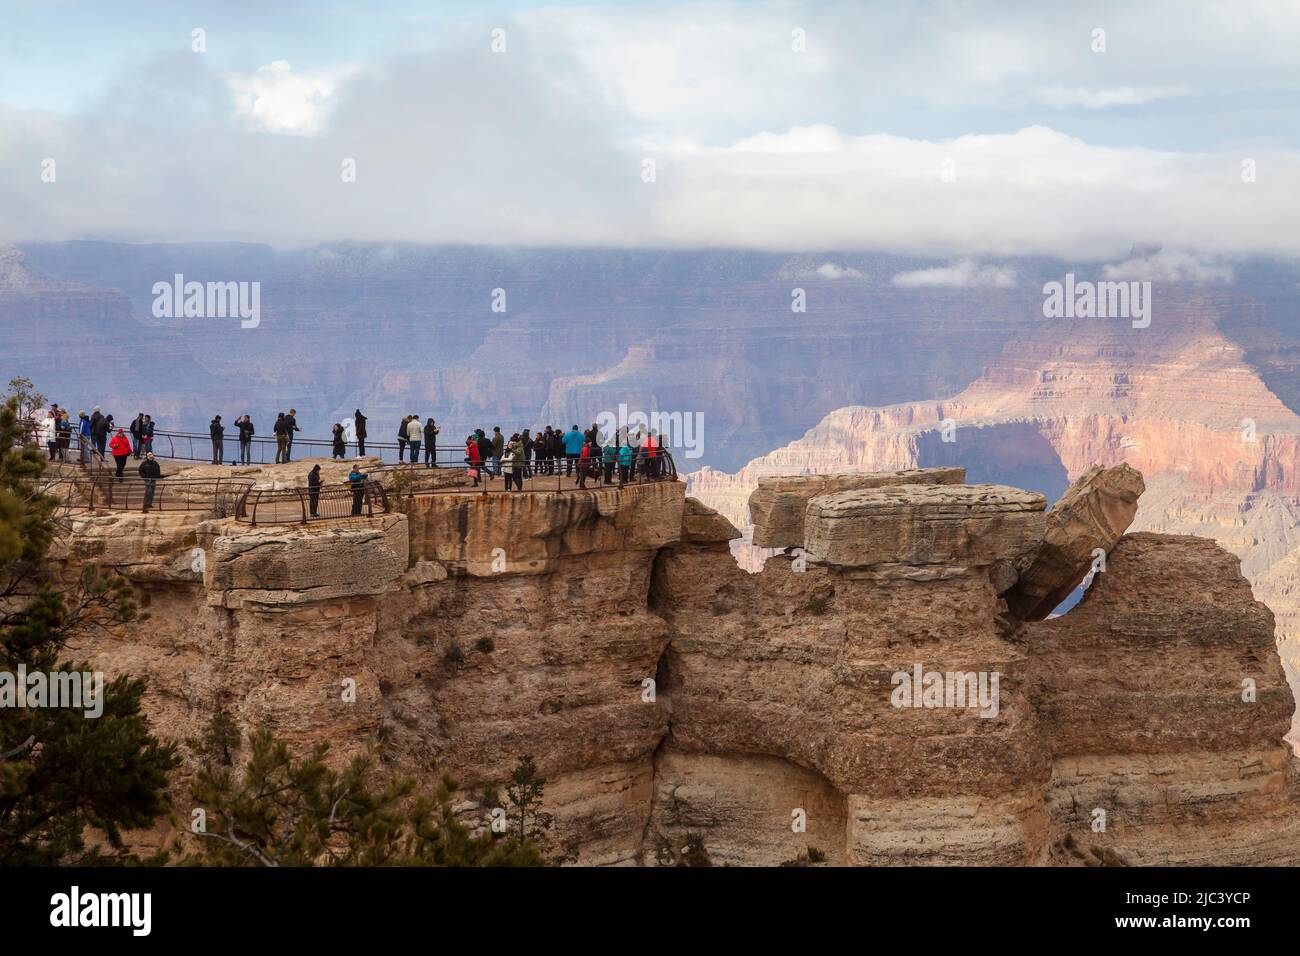 Tourists at Mather Point, South rim, Grand Canyon, Arizona, USA Stock Photo